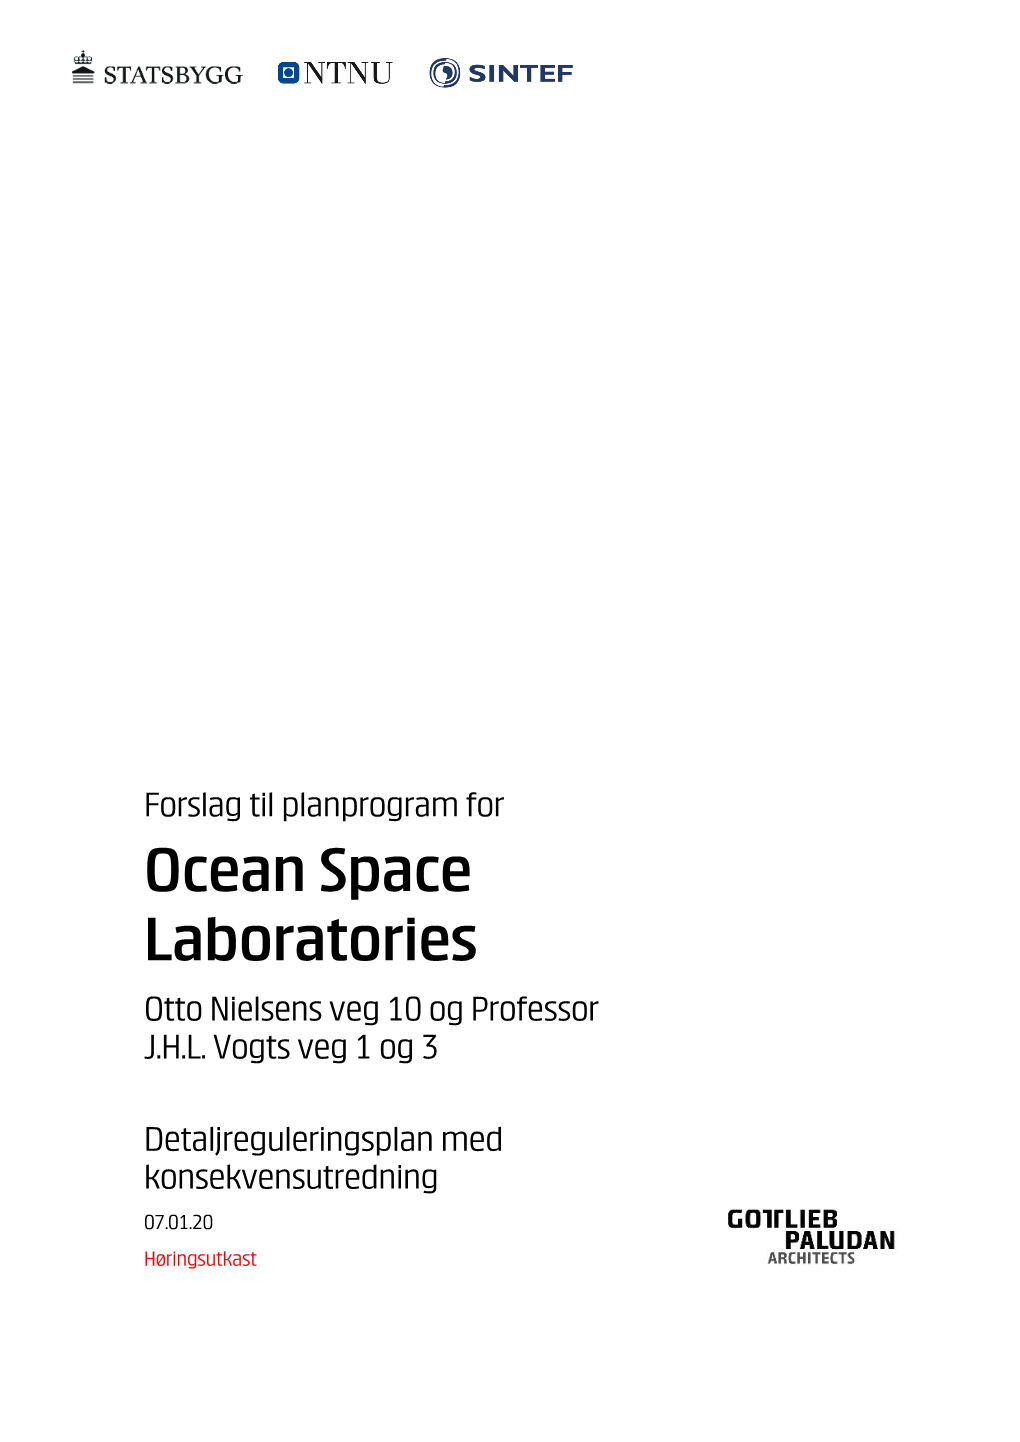 Planprogram for Ocean Space Laboratories Otto Nielsens Veg 10 Og Professor J.H.L